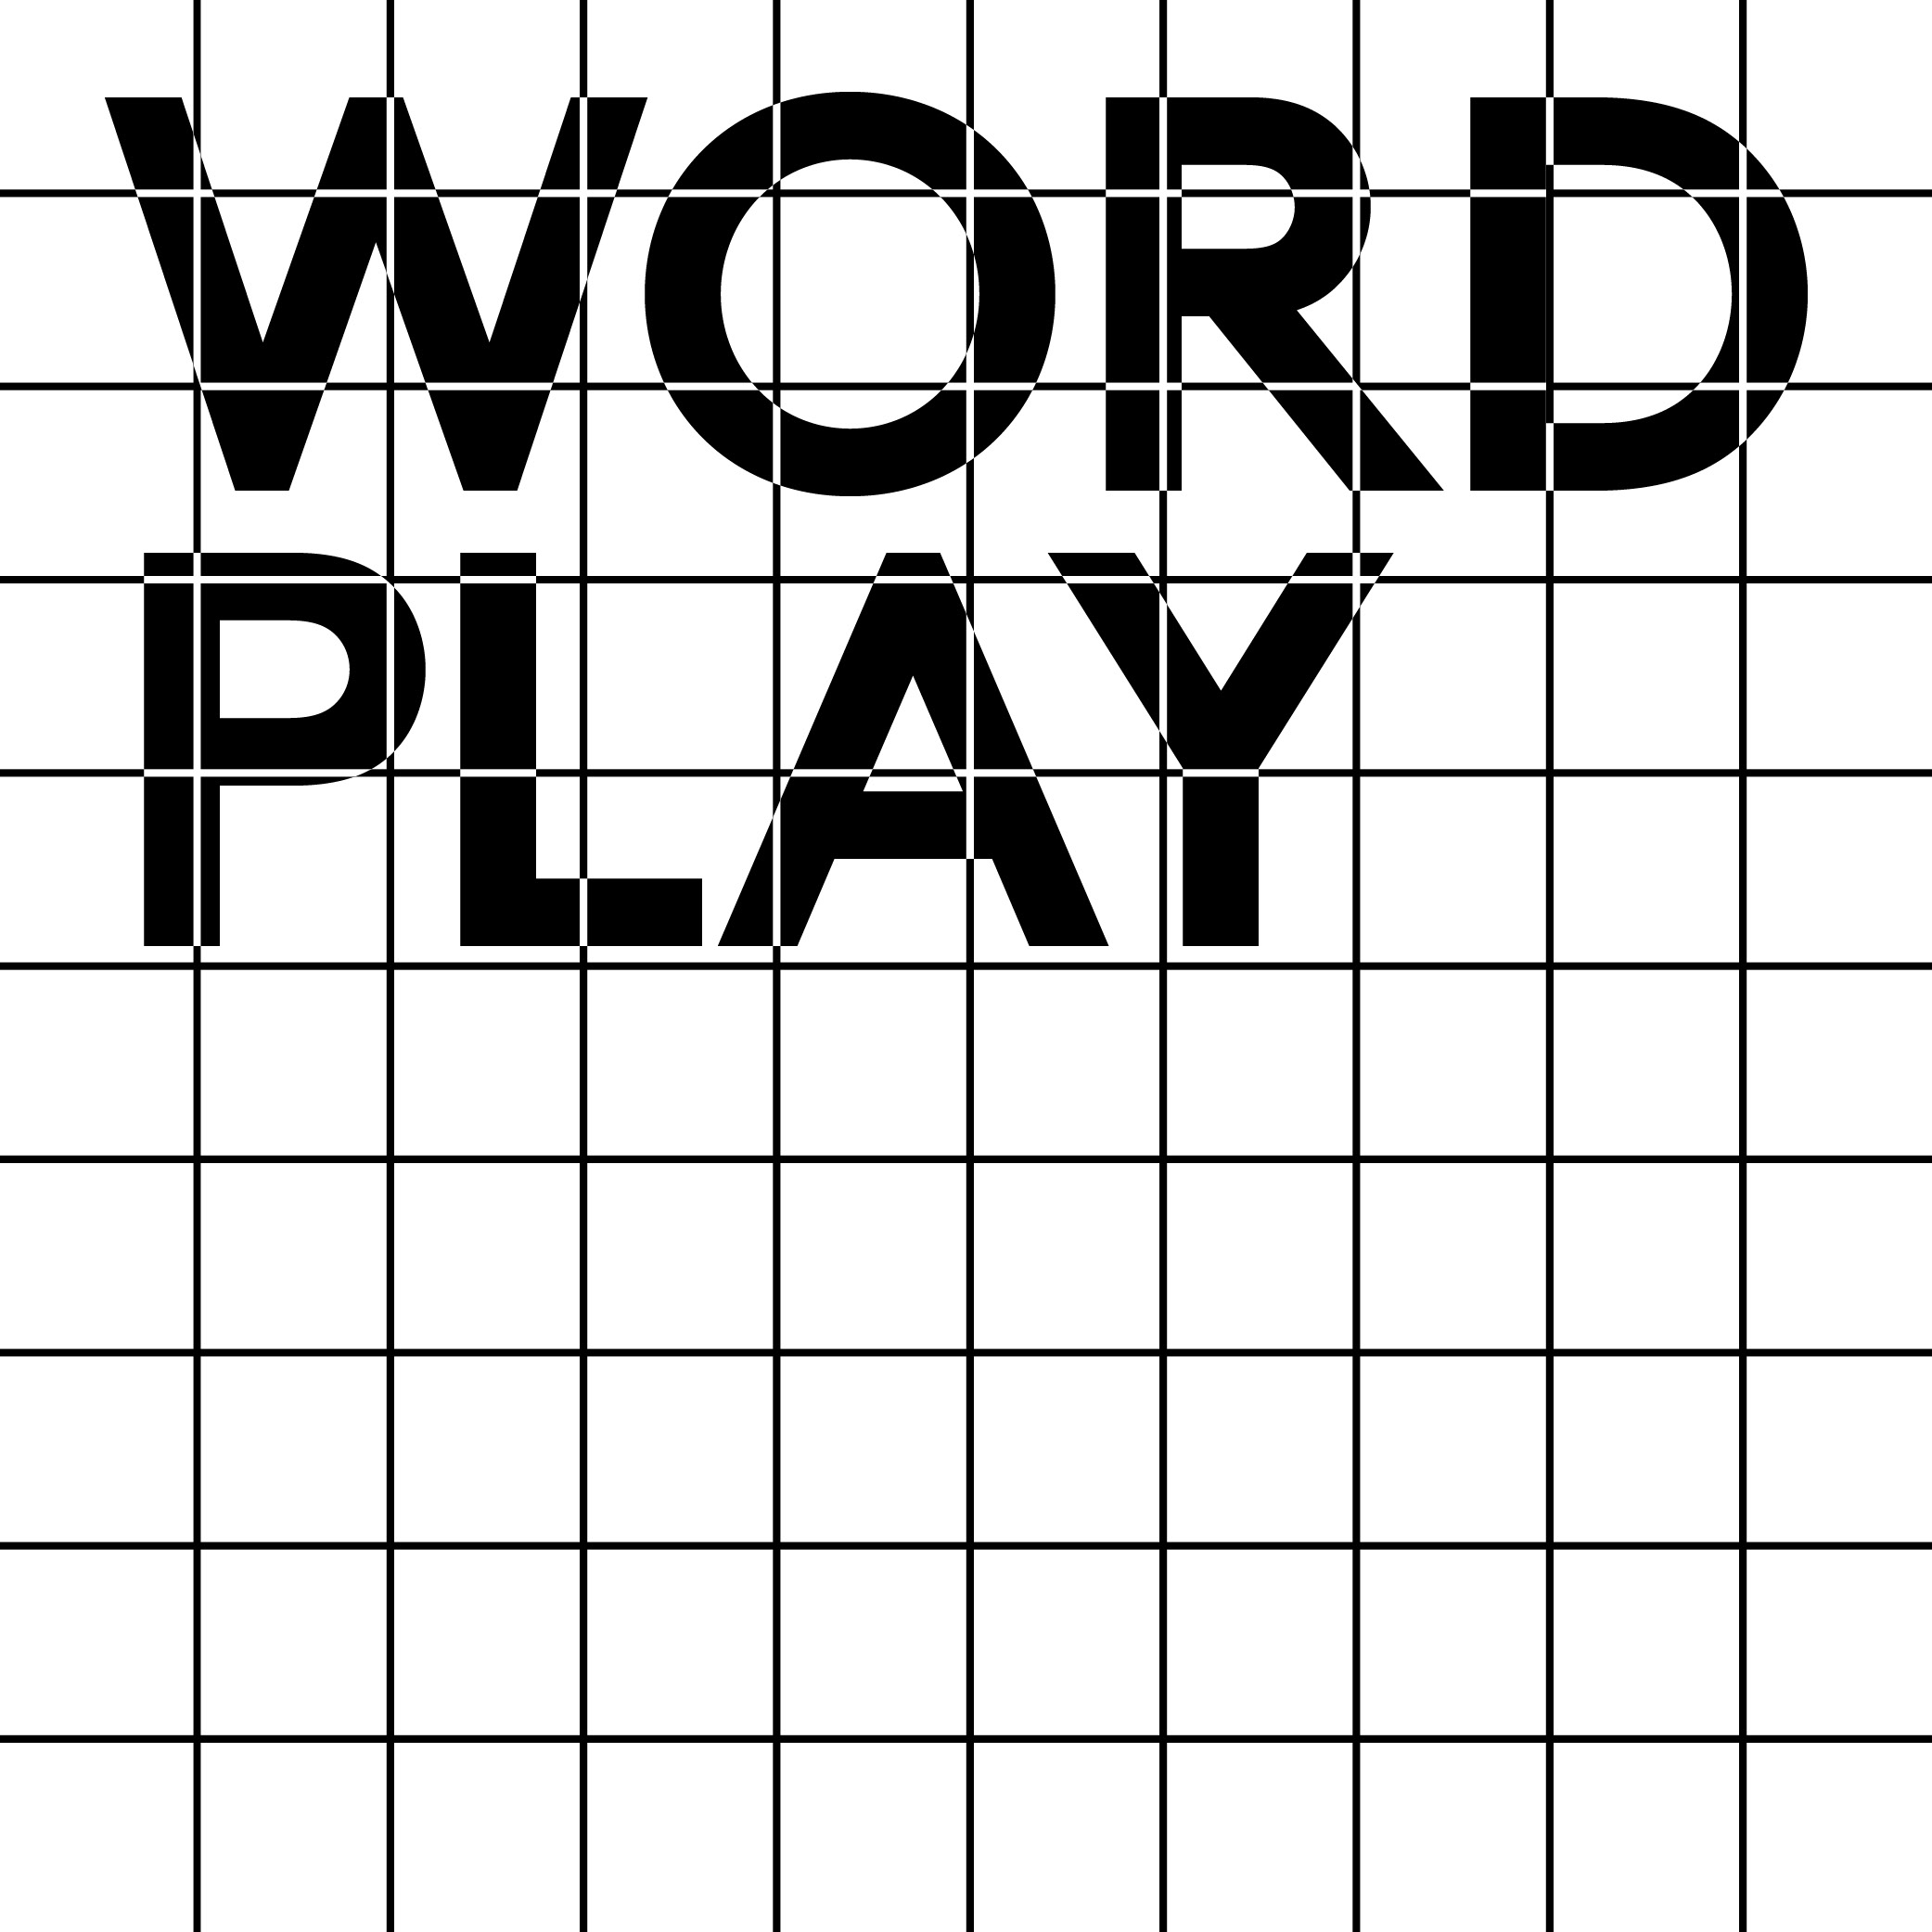 Schrift hinter raster: Word Play